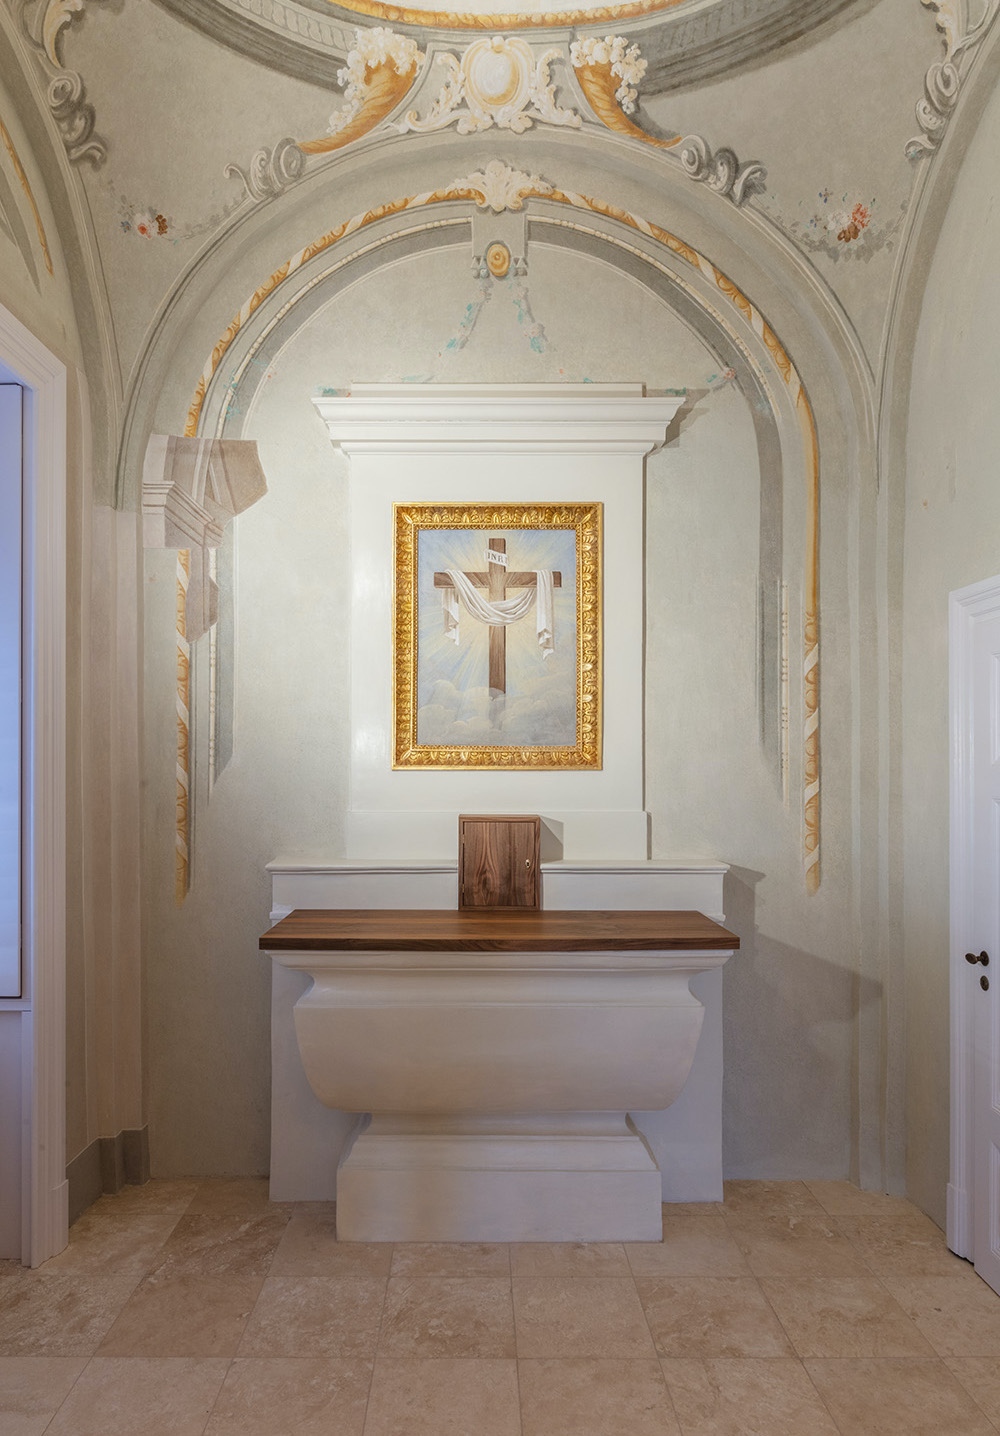 A berendezés előtti felszentelt kápolna, oltárán ritka Feltámadás-ábrázolás: kizárólag a szent jelenet attribútuma látható